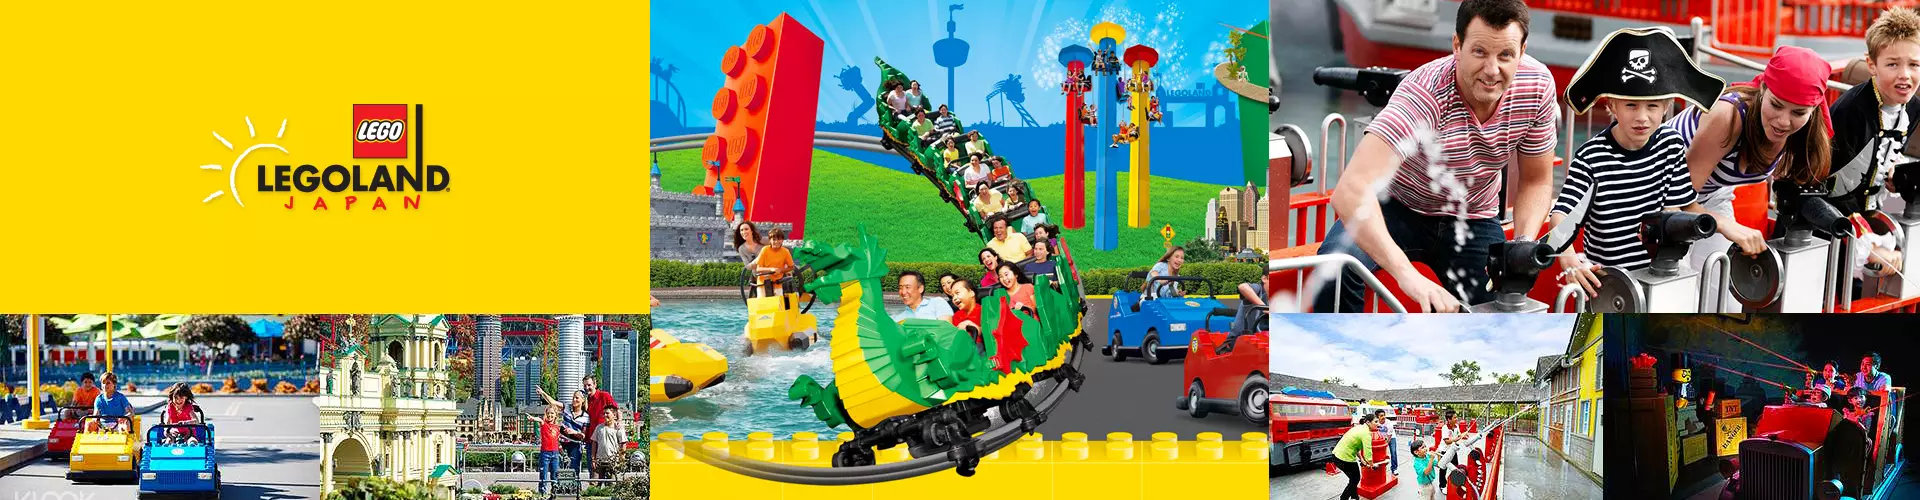 日本樂高®樂園 Legoland 門票